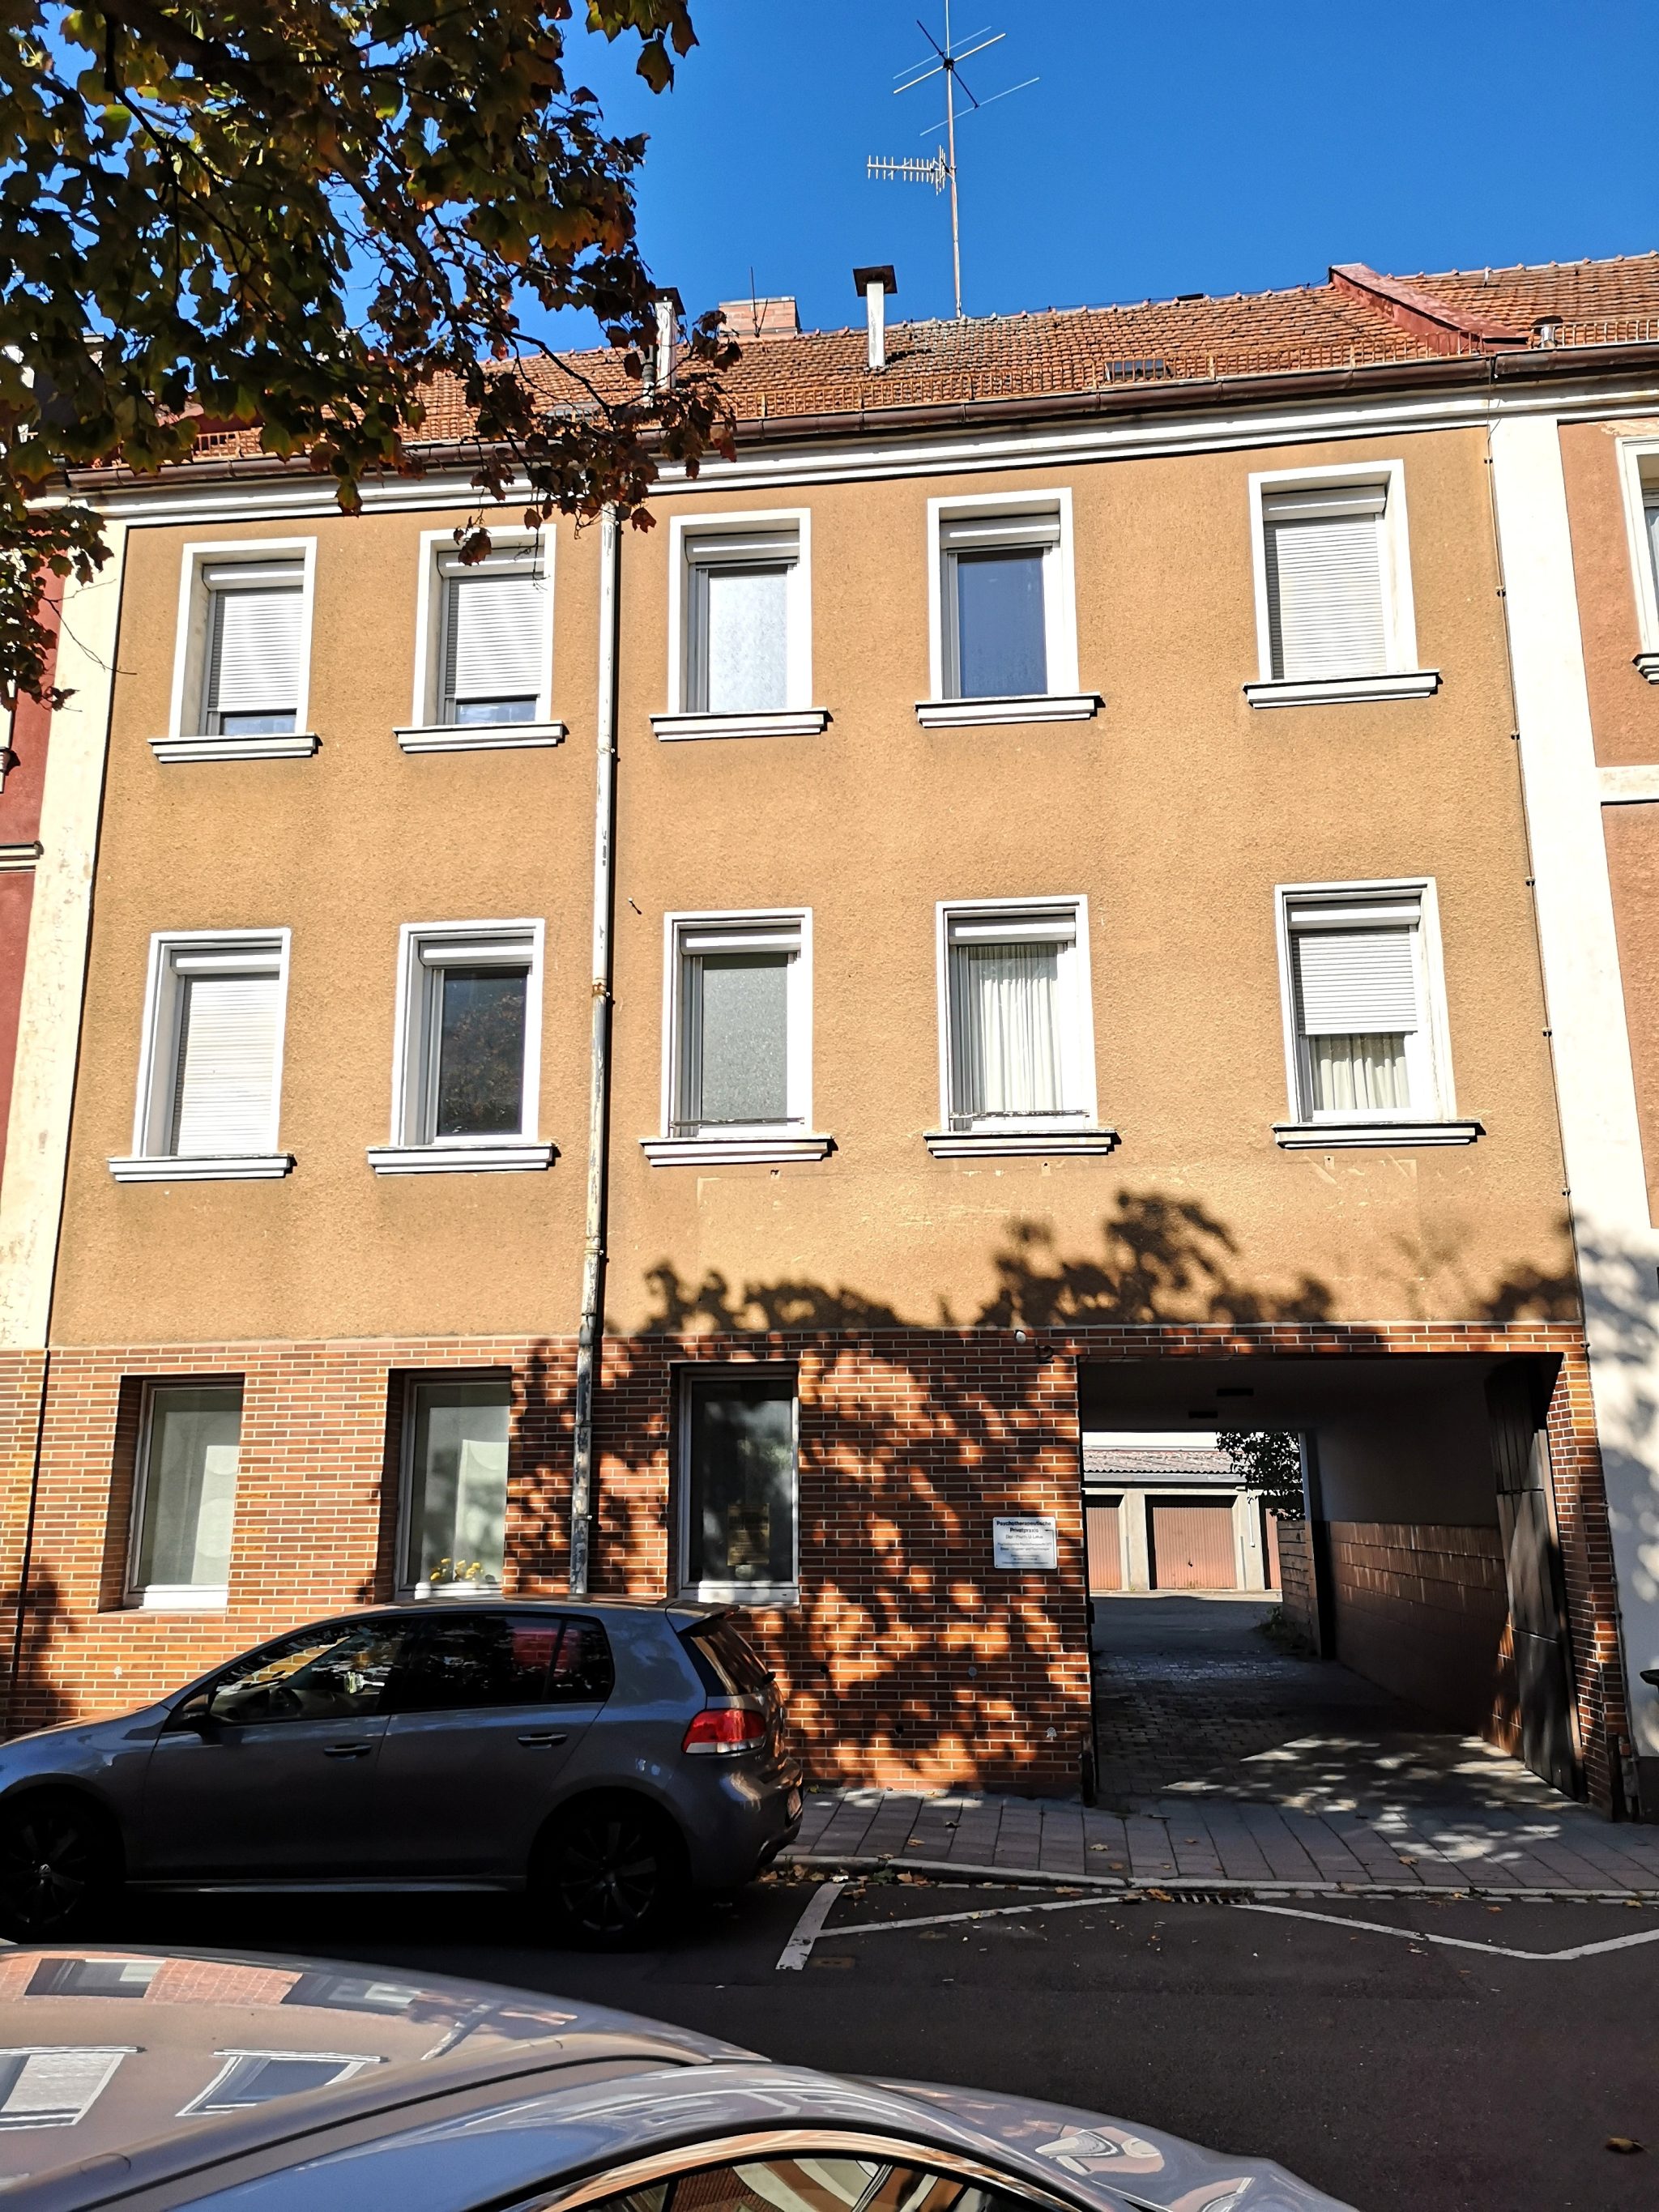 Immobilienangebot - Erlangen - Alle - Mehrfamilienwohnhaus mit 10 Garagen und fünf Stellplätzen in bevorzugter Wohnlage.

Erlangen-Zentrum (Zollhaus)